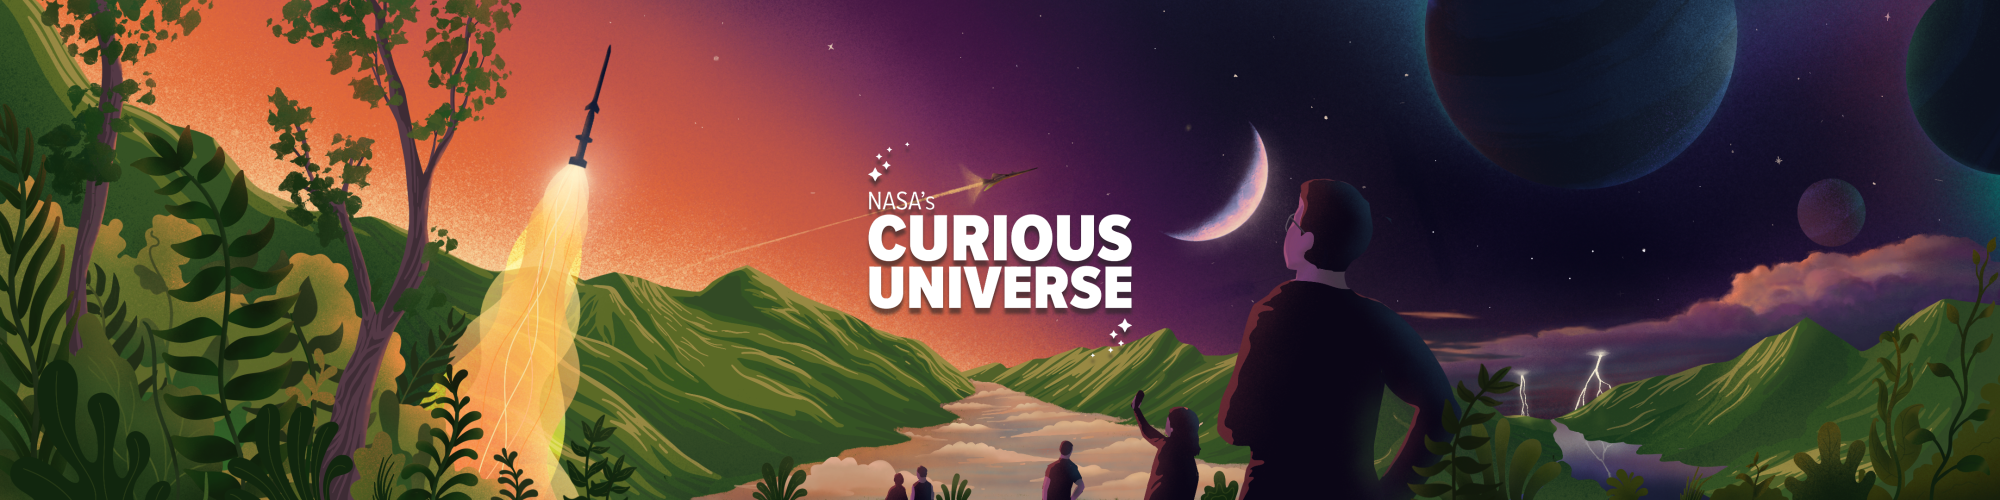 NASA - Curious Universe